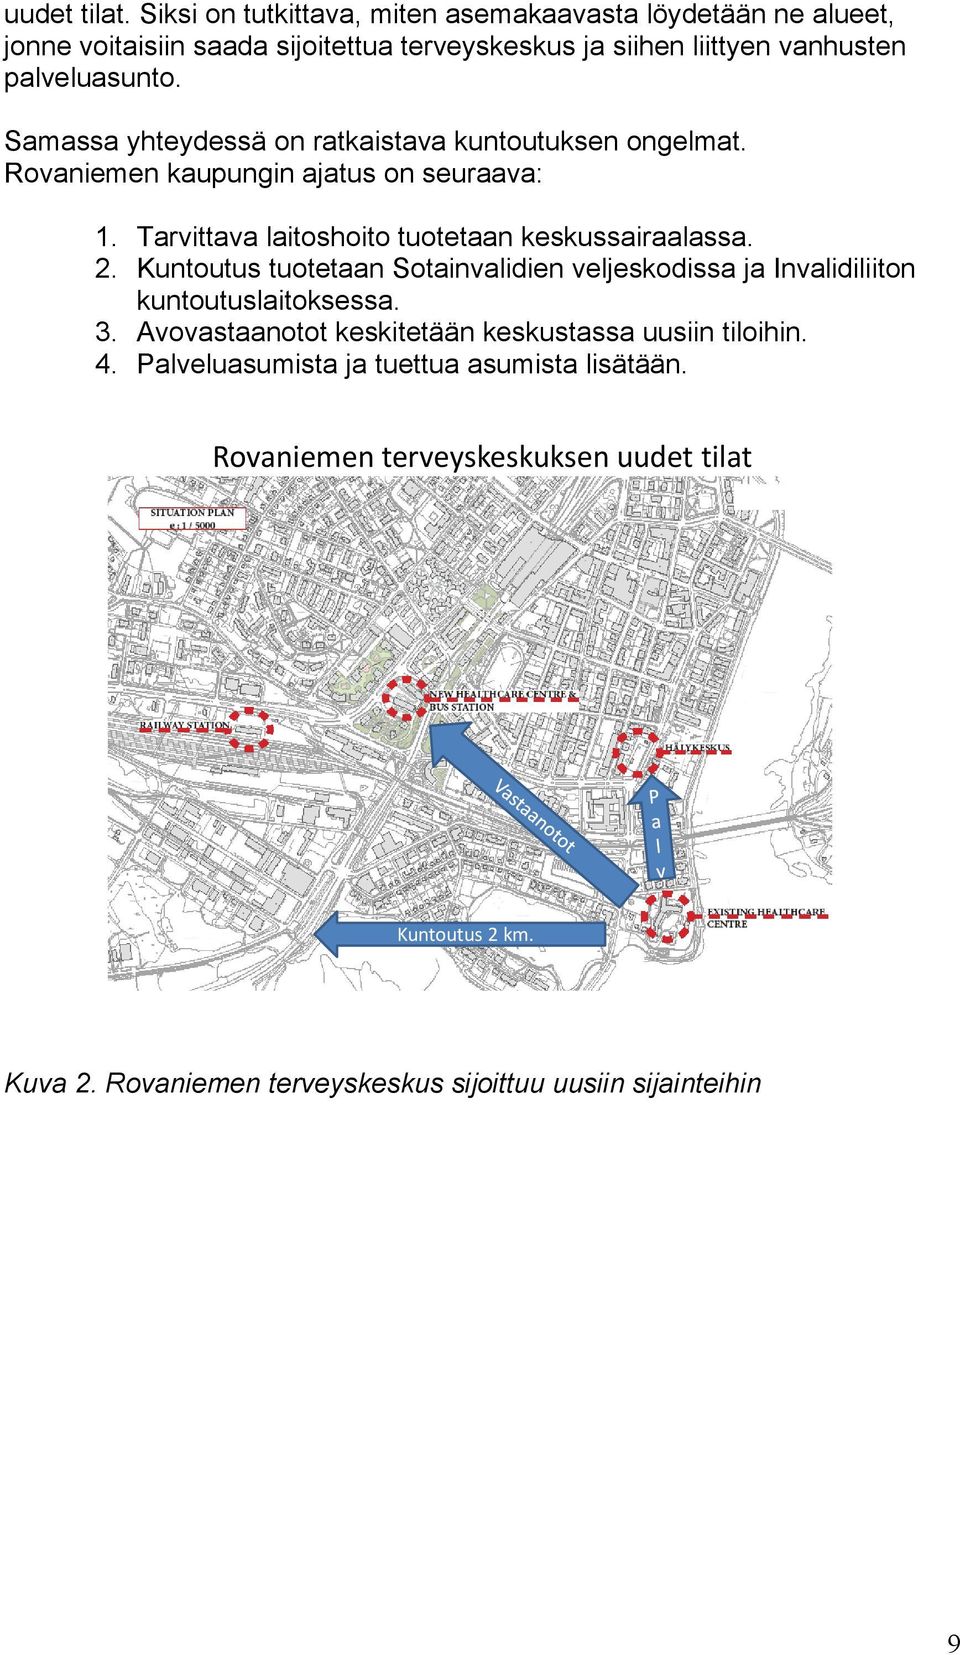 Samassa yhteydessä on ratkaistava kuntoutuksen ongelmat. Rovaniemen kaupungin ajatus on seuraava: 1. Tarvittava laitoshoito tuotetaan keskussairaalassa. 2.